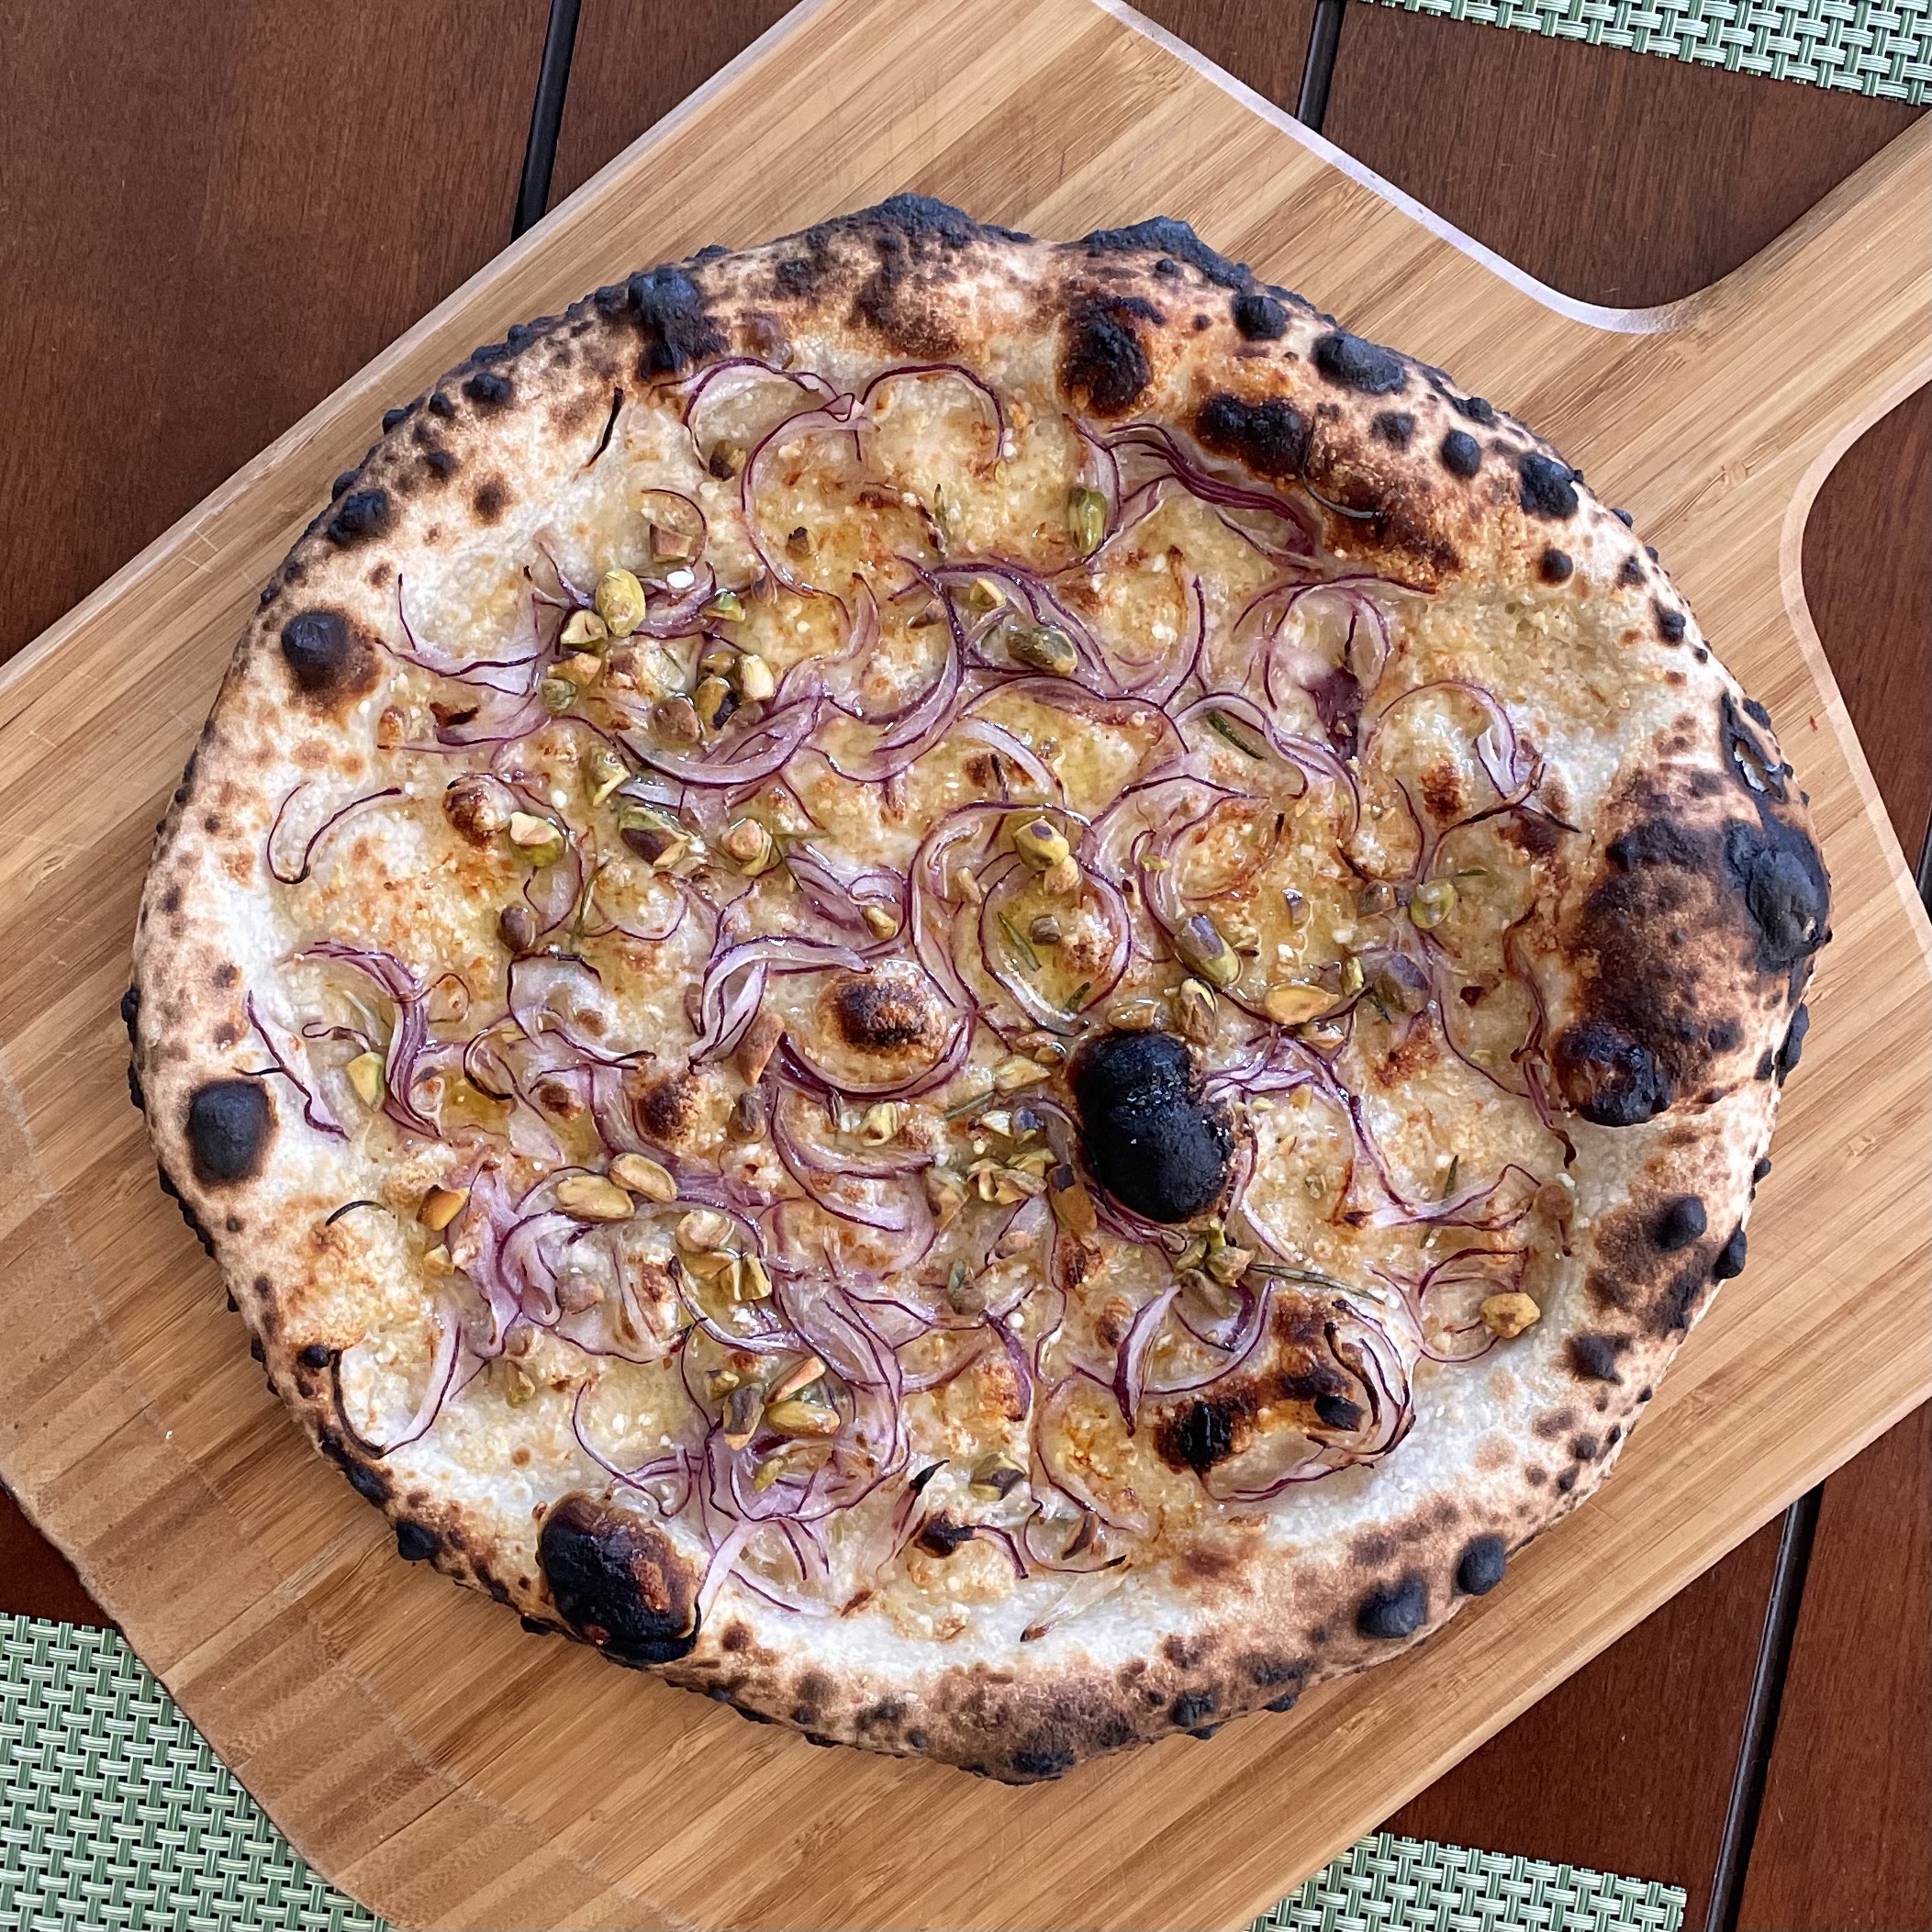 Bianco's in the Ooni Pizza Oven – Santa Barbara Baker